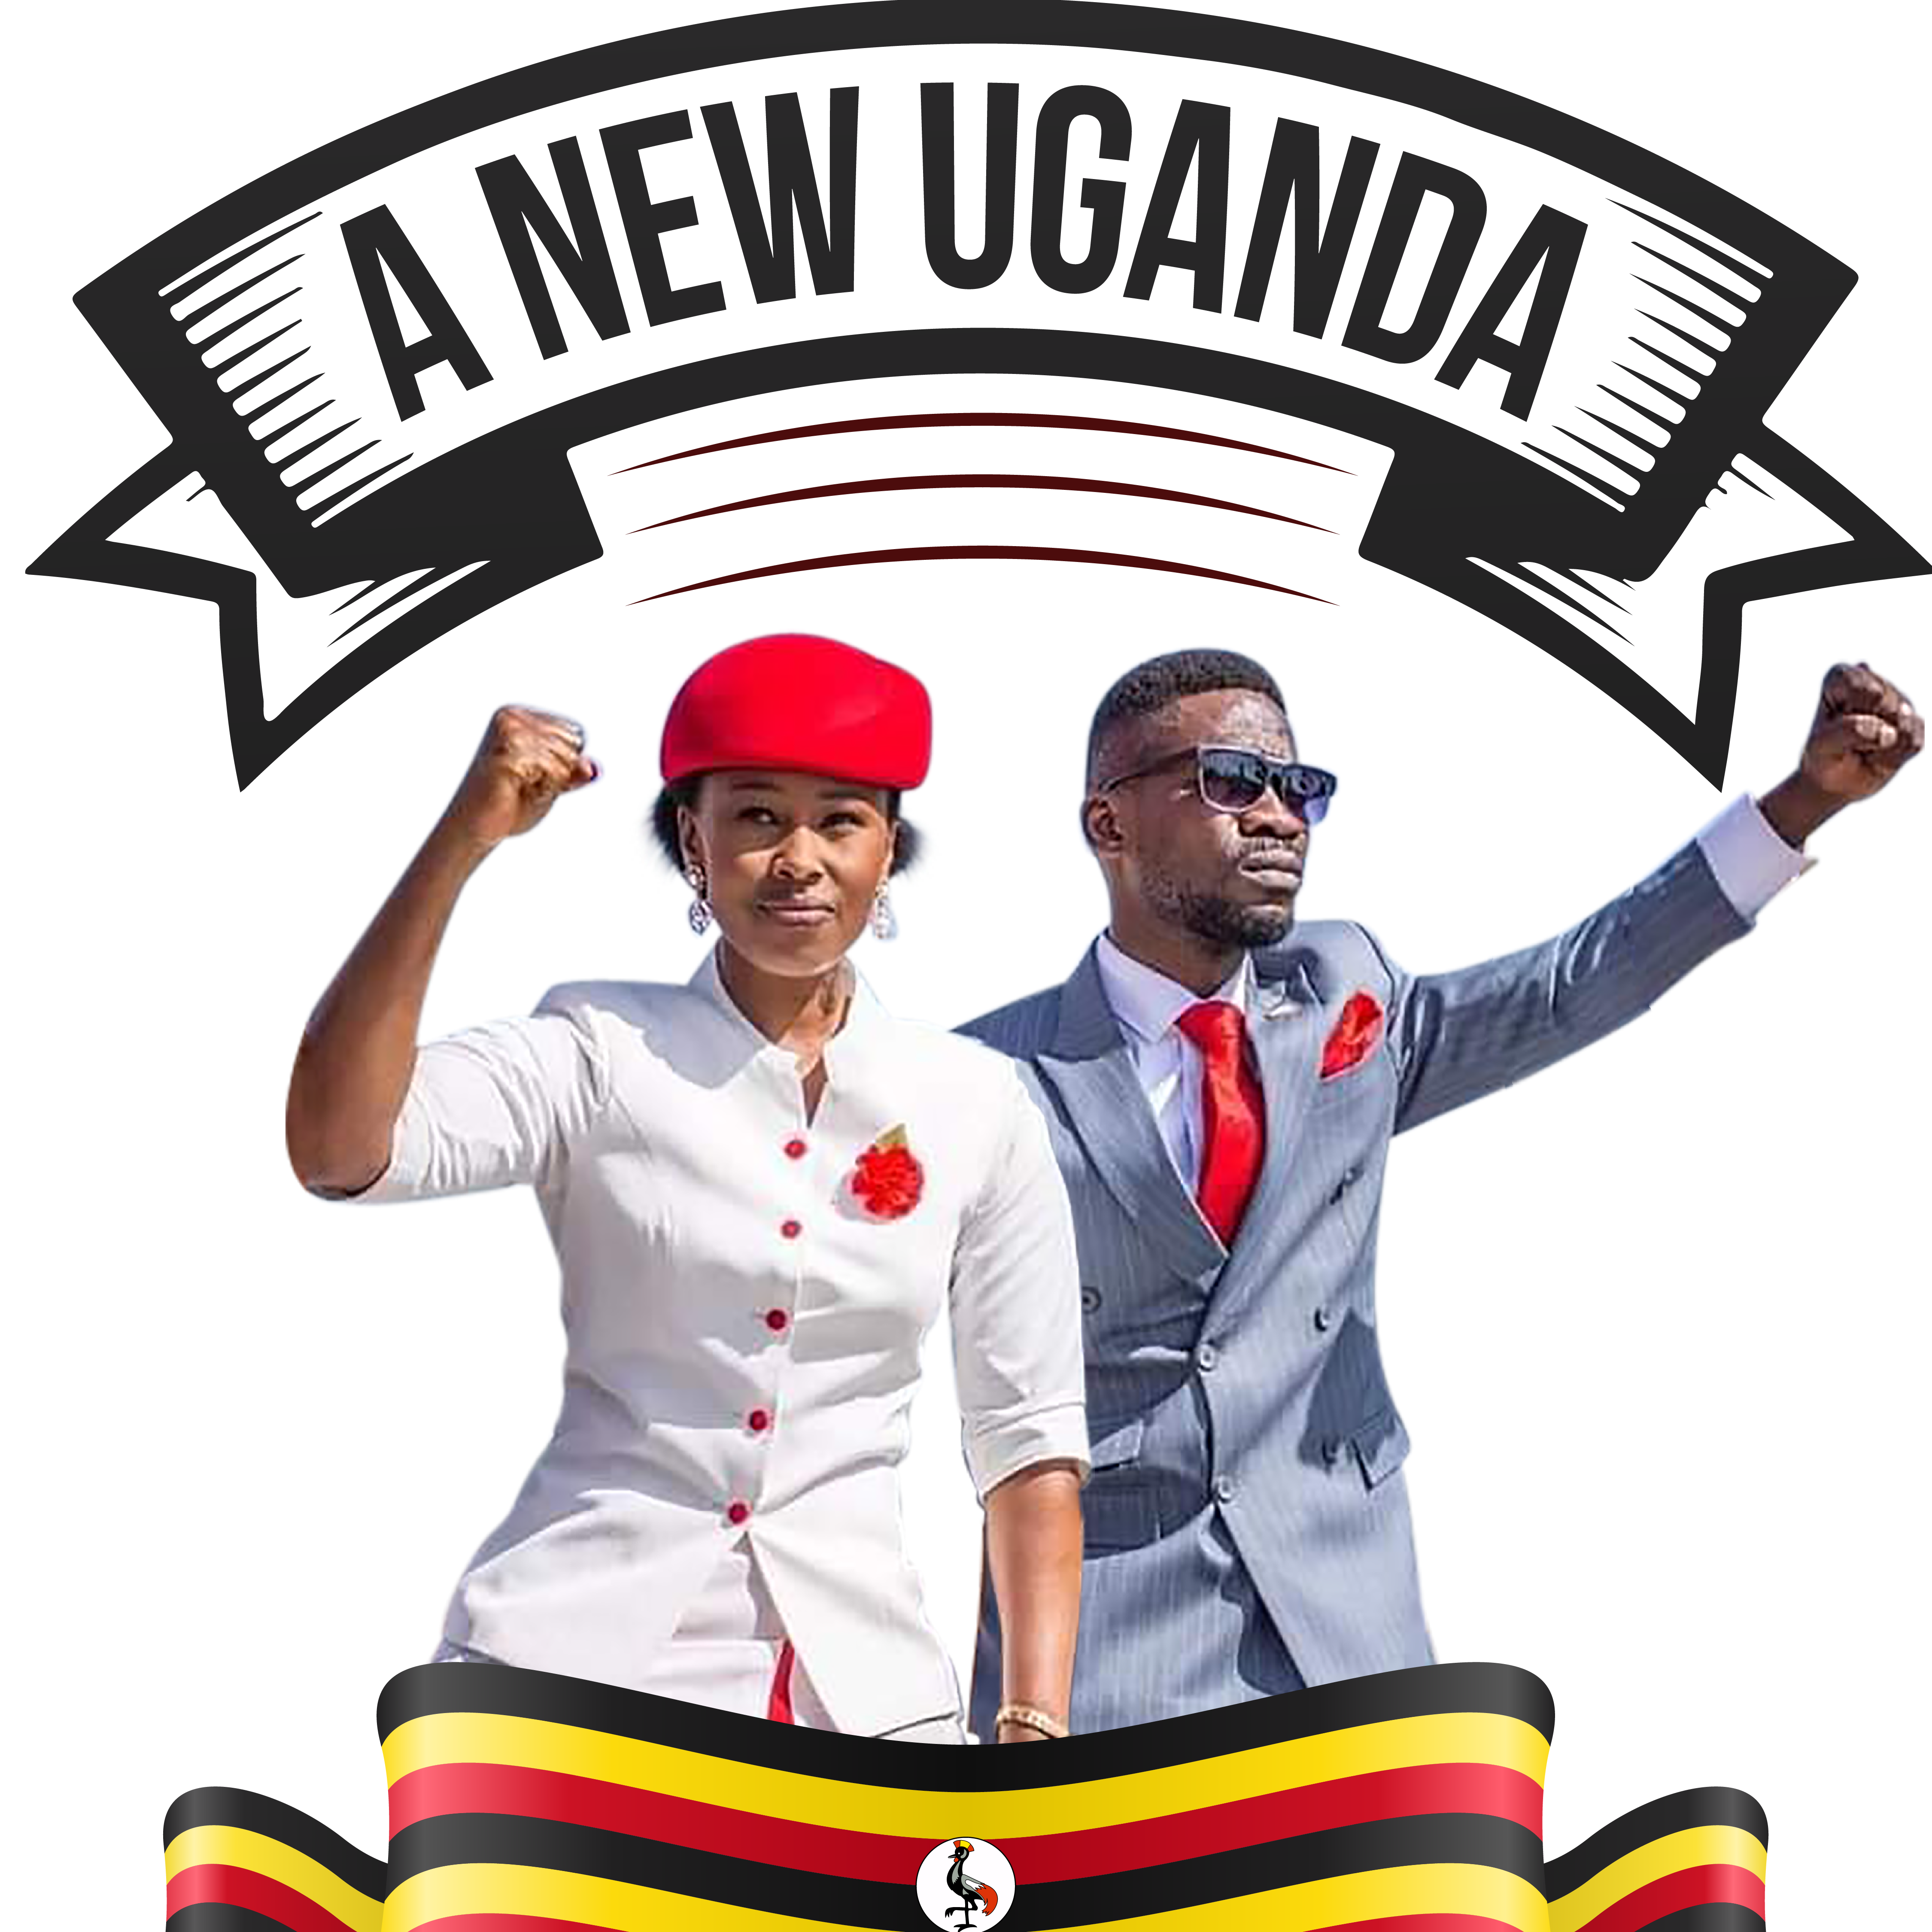 Change Uganda Radio